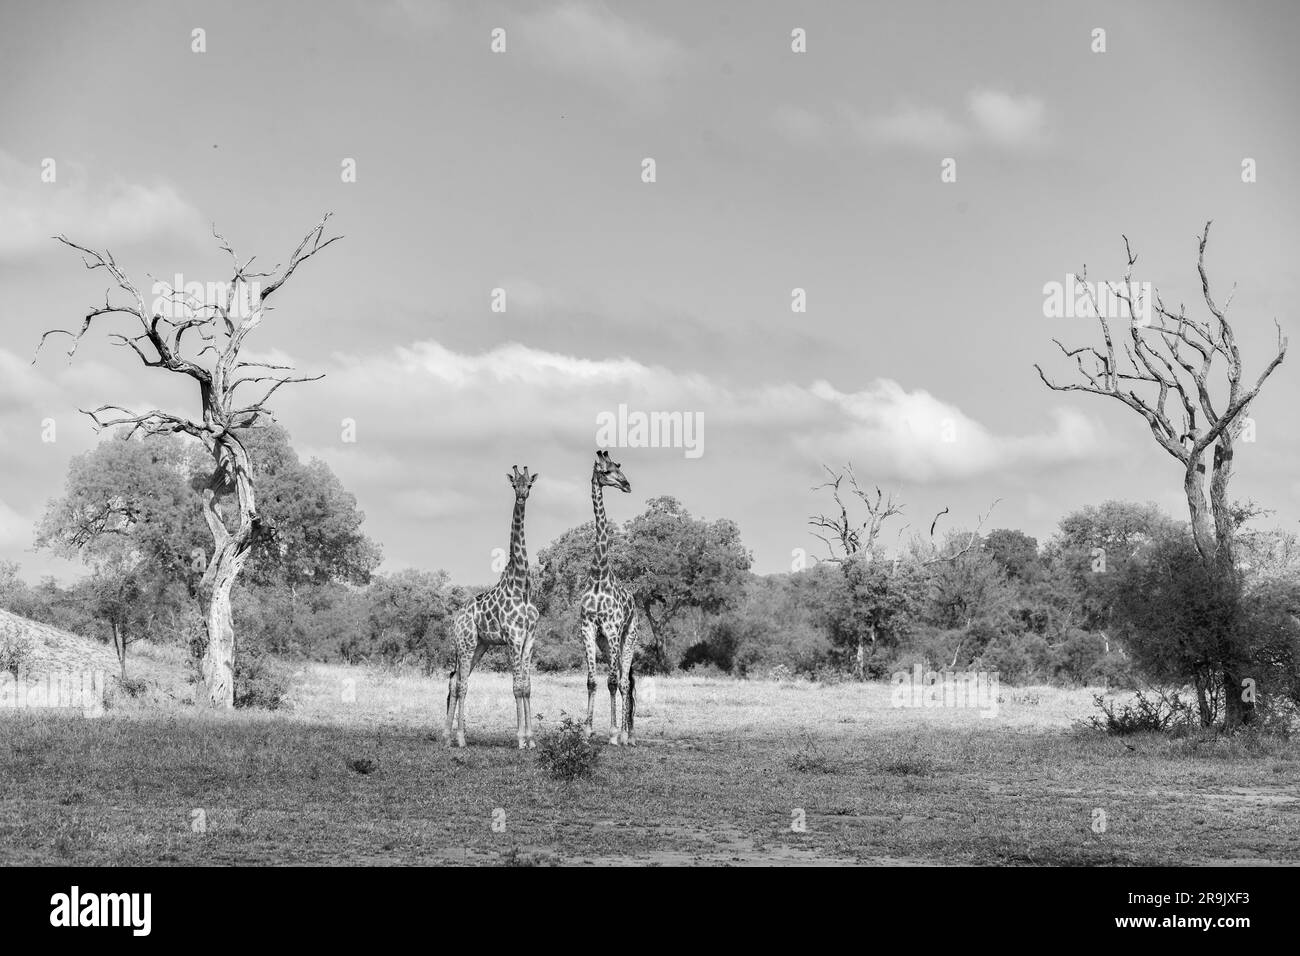 Deux girafes, Giraffa, se dressent ensemble dans une clairière, parmi les arbres en bois de plomb, en noir et blanc. Banque D'Images